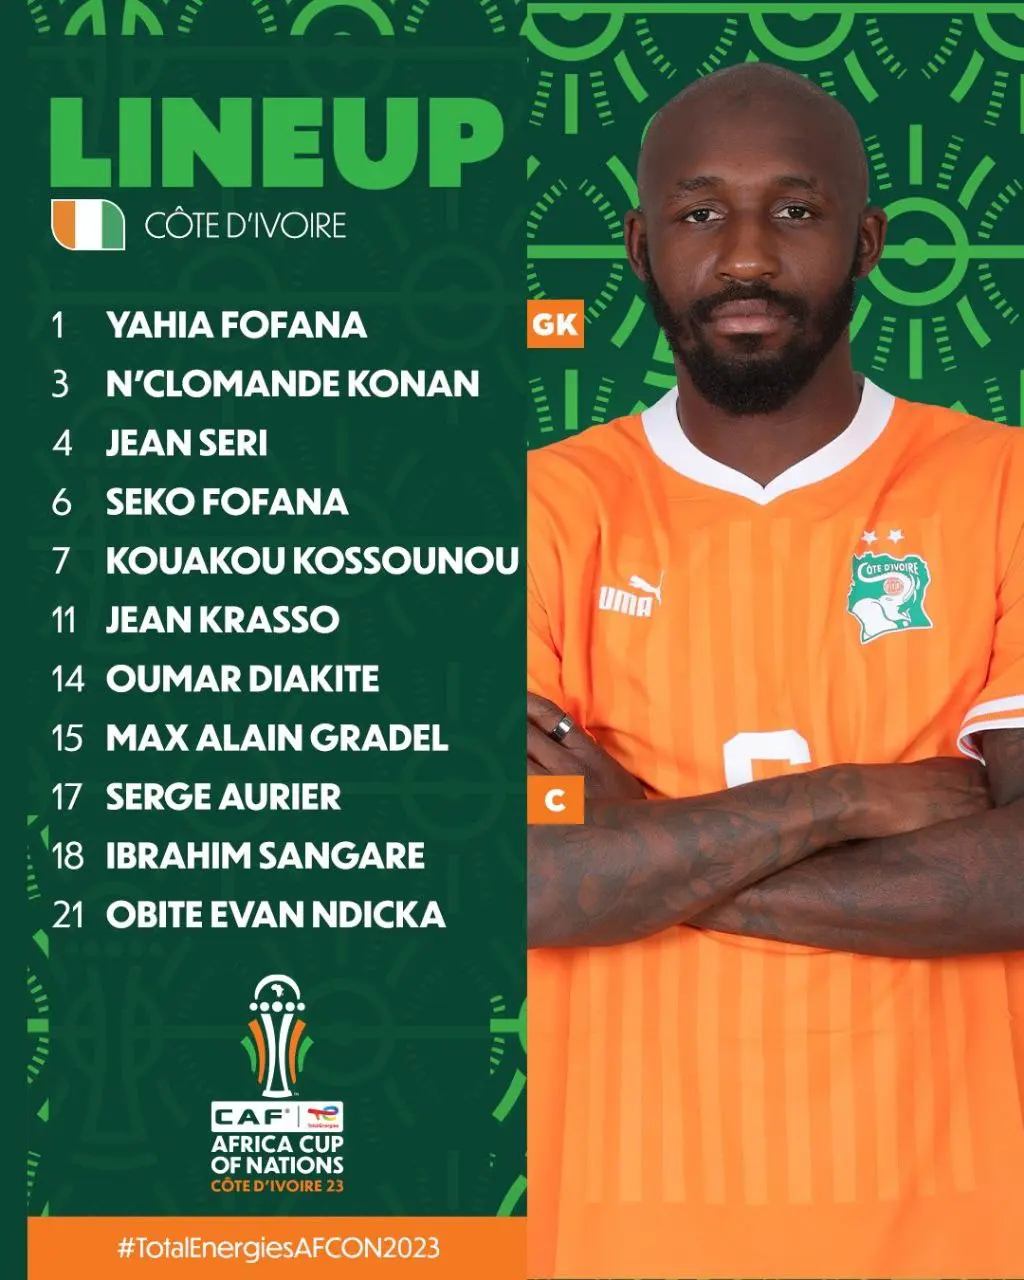 اعلام ترکیب تیم های ملی سنگال و ساحل عاج